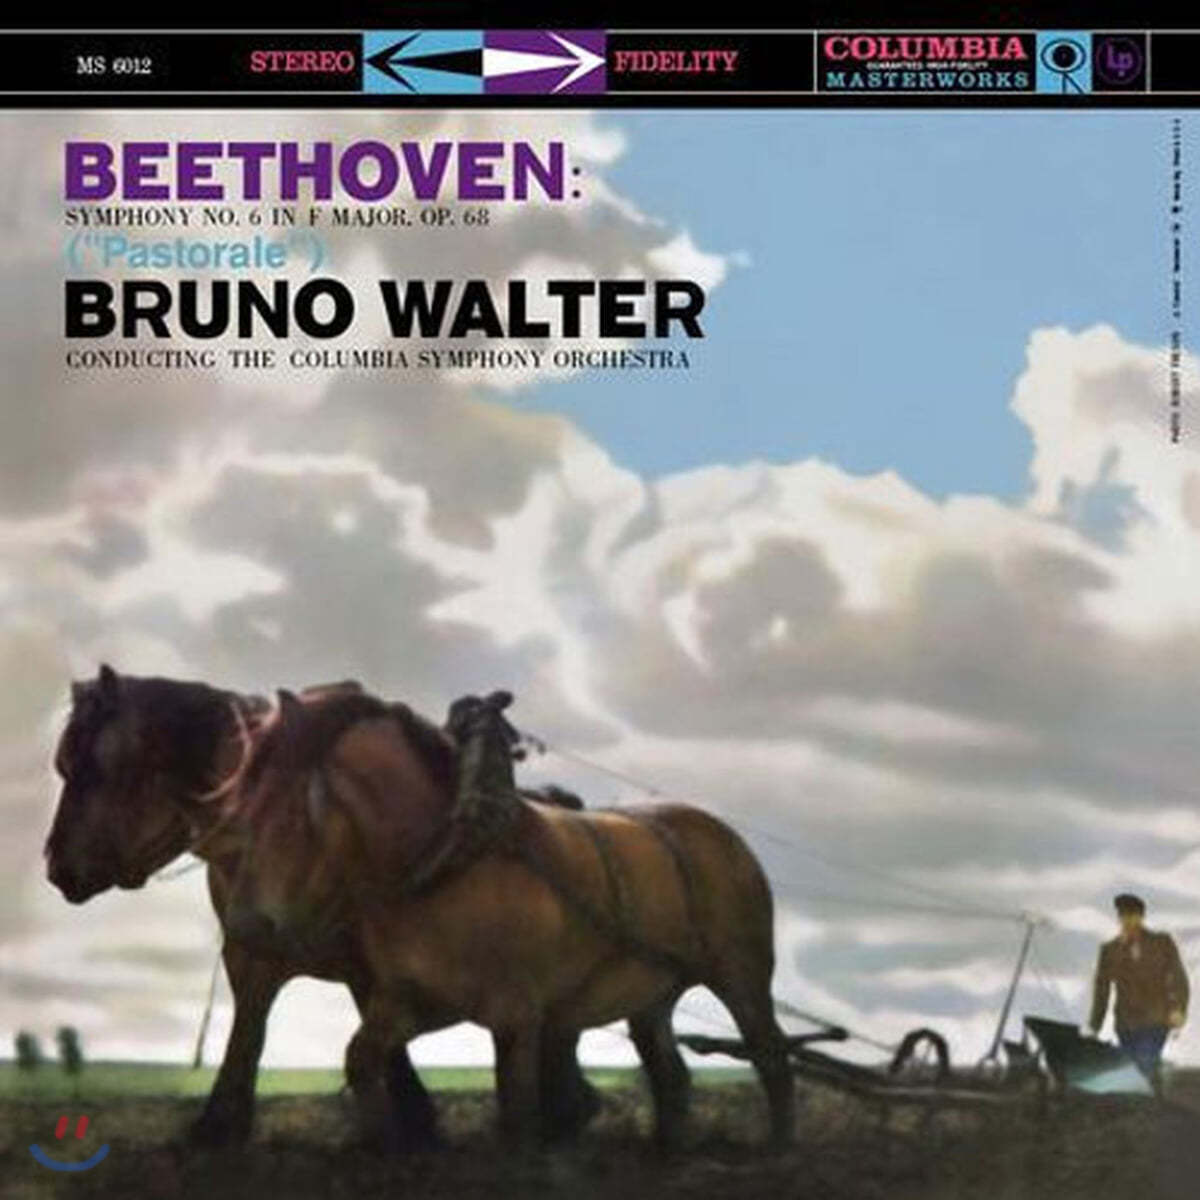 Bruno Walter 베토벤: 교향곡 6번 '전원' - 브루노 발터 (Beethoven: Symphony Op.68 `Pastoral`) [LP]